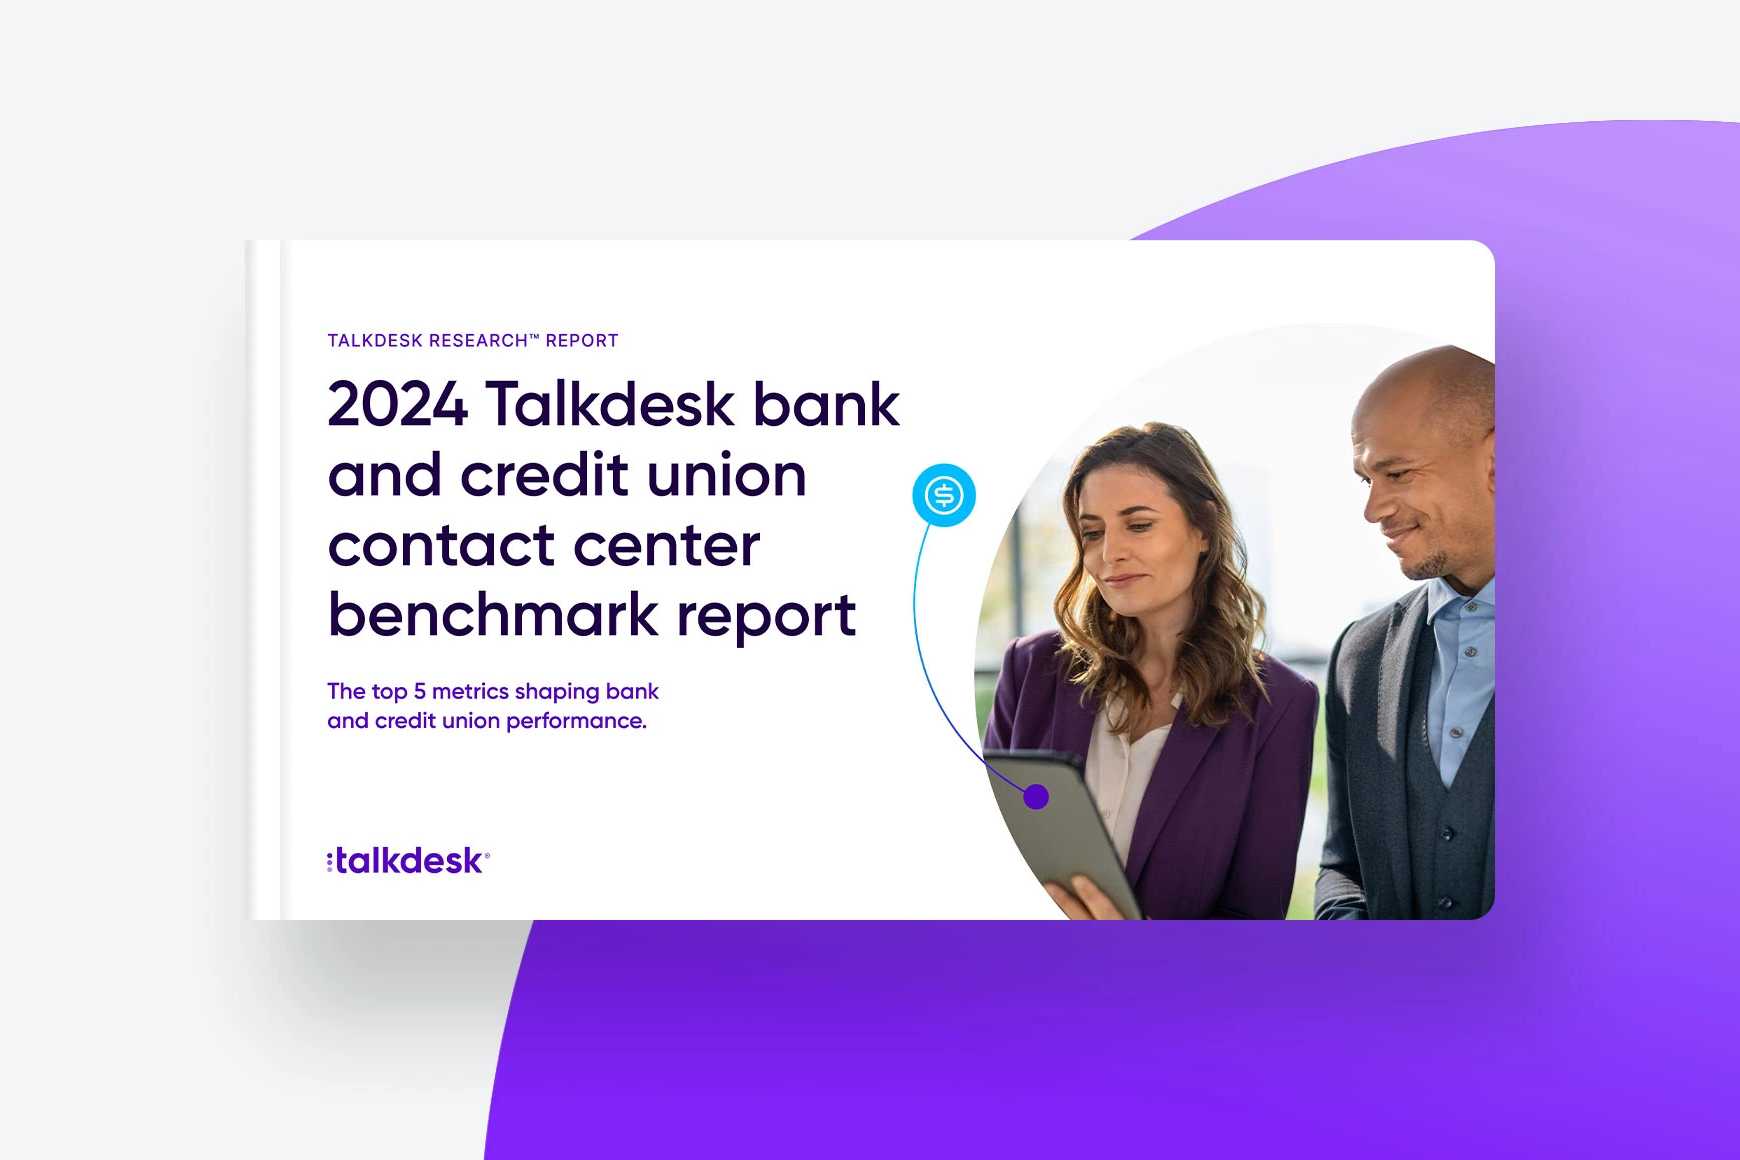 Talkdesk Benchmark-Bericht 2024 für Contact Center von Banken und Kreditgenossenschaften